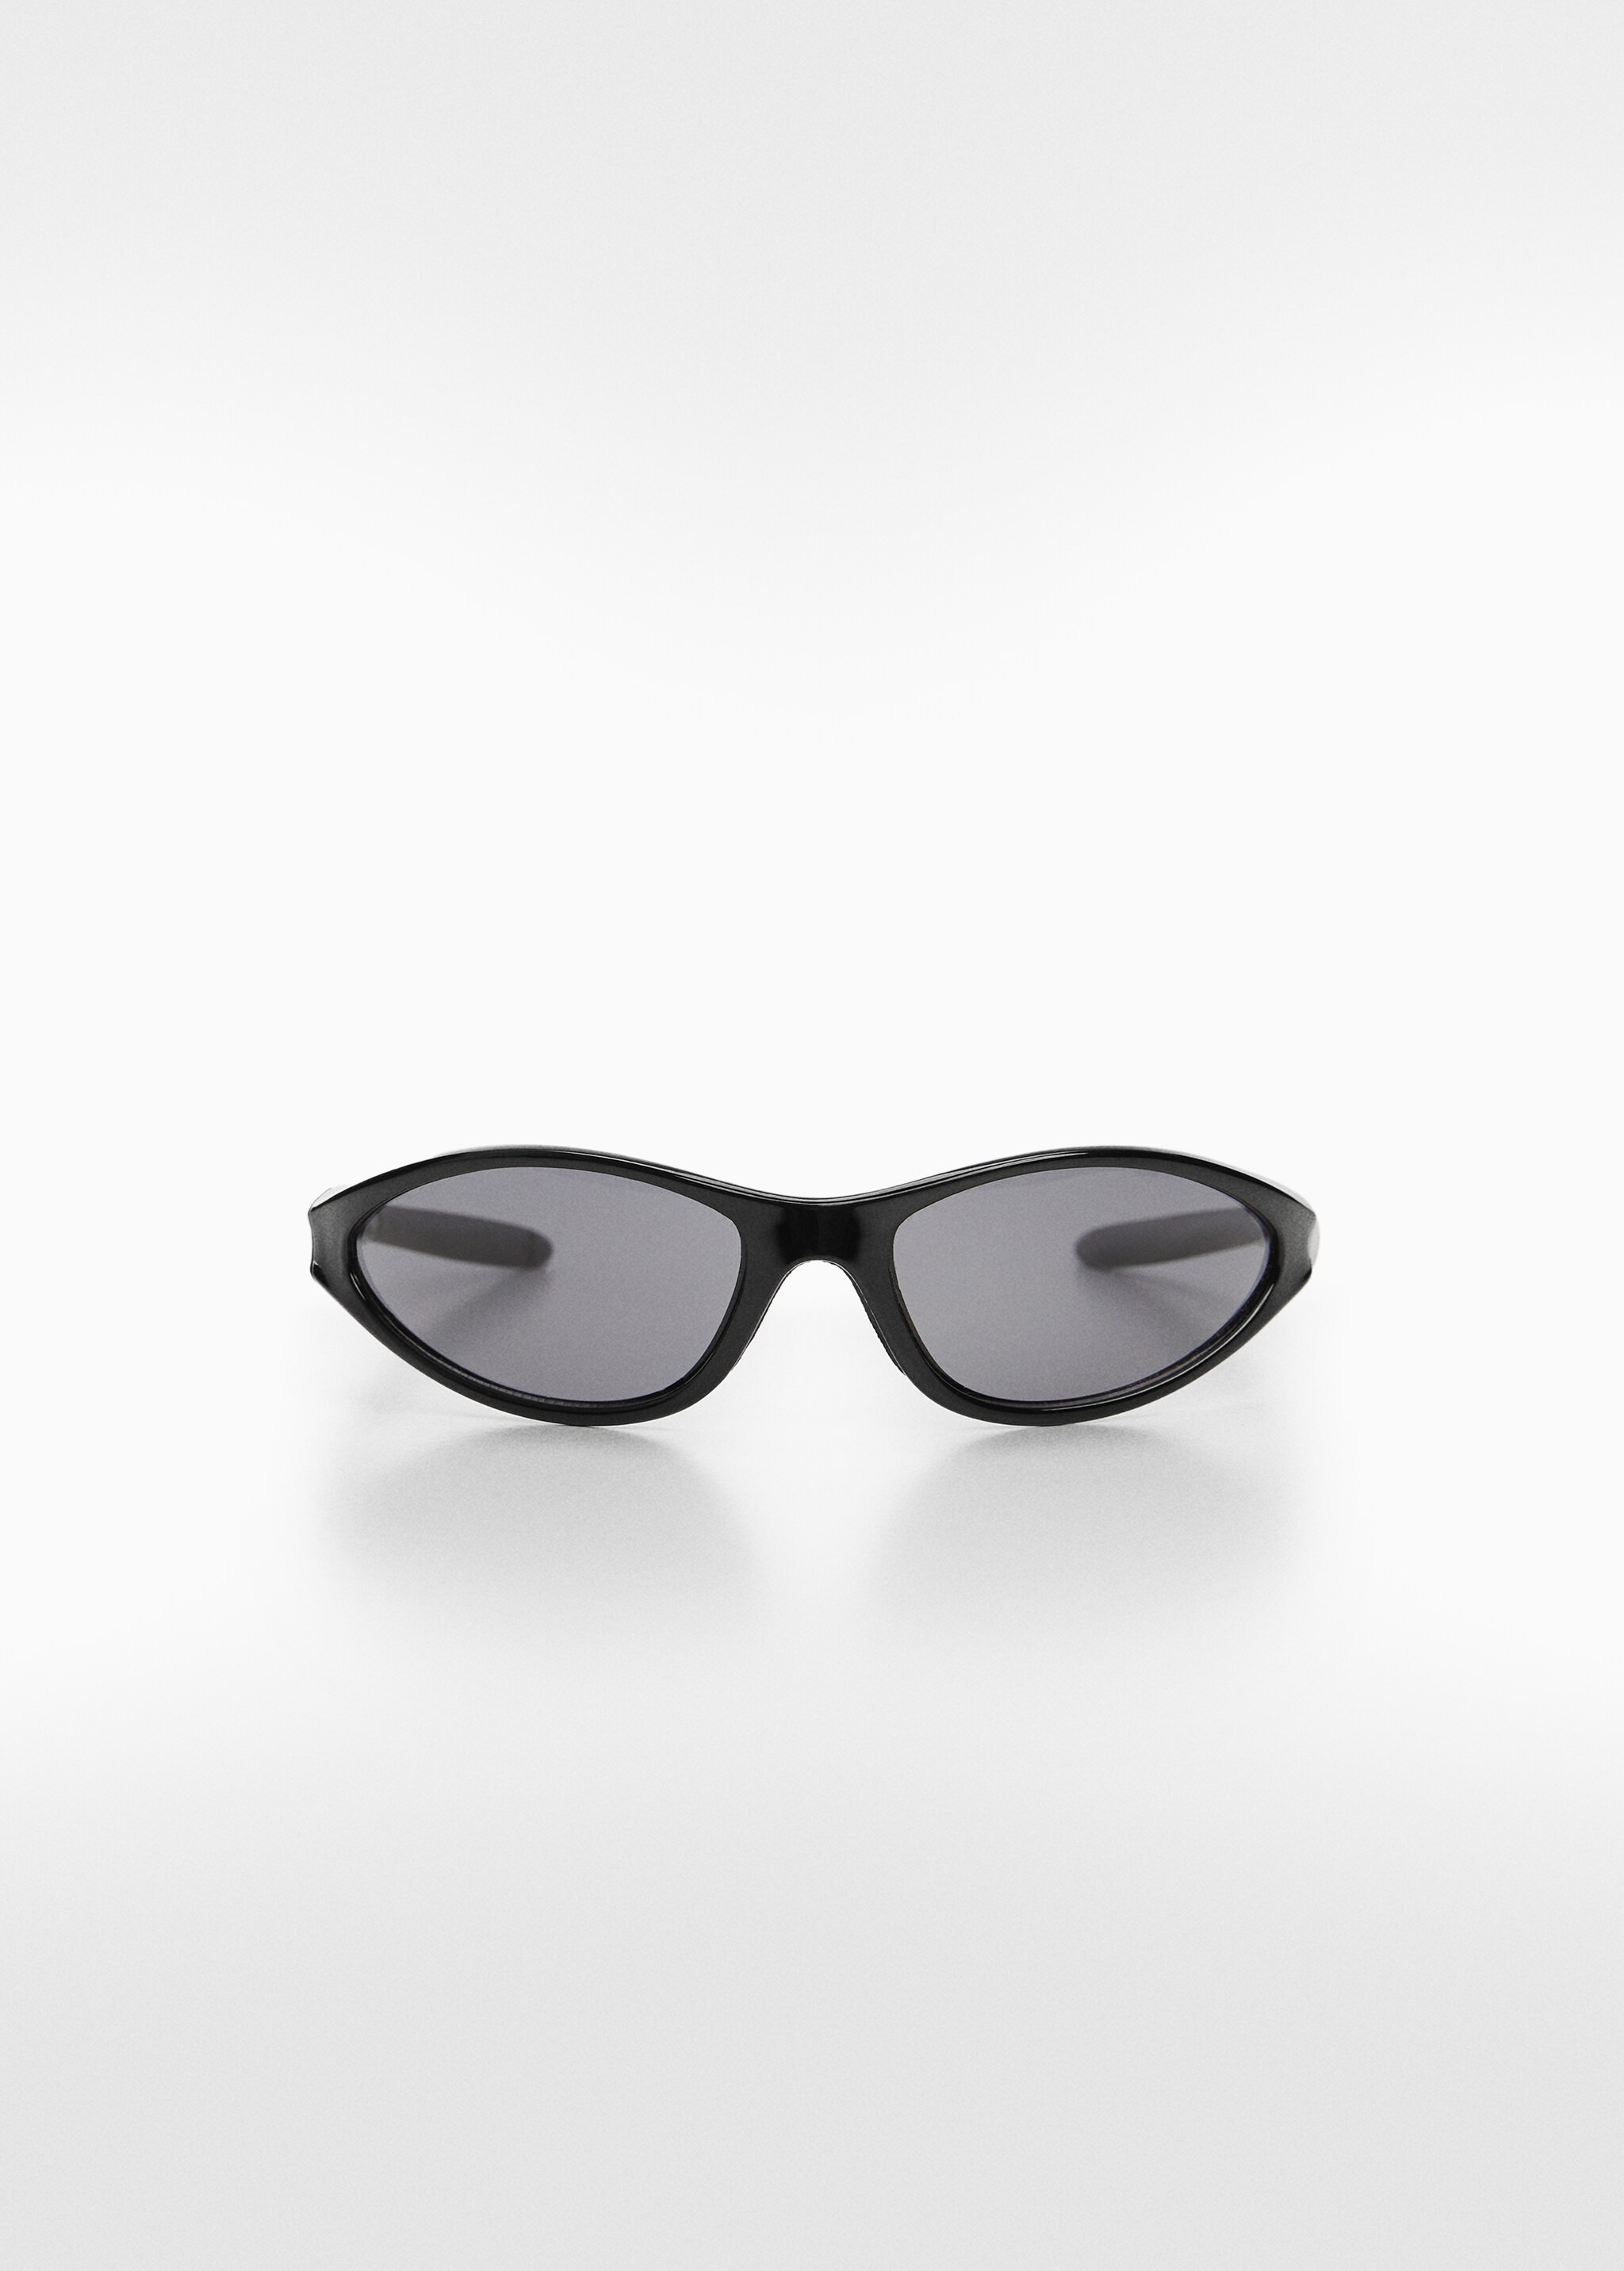 Sonnenbrille mit gebogenem Gestell - Artikel ohne Model